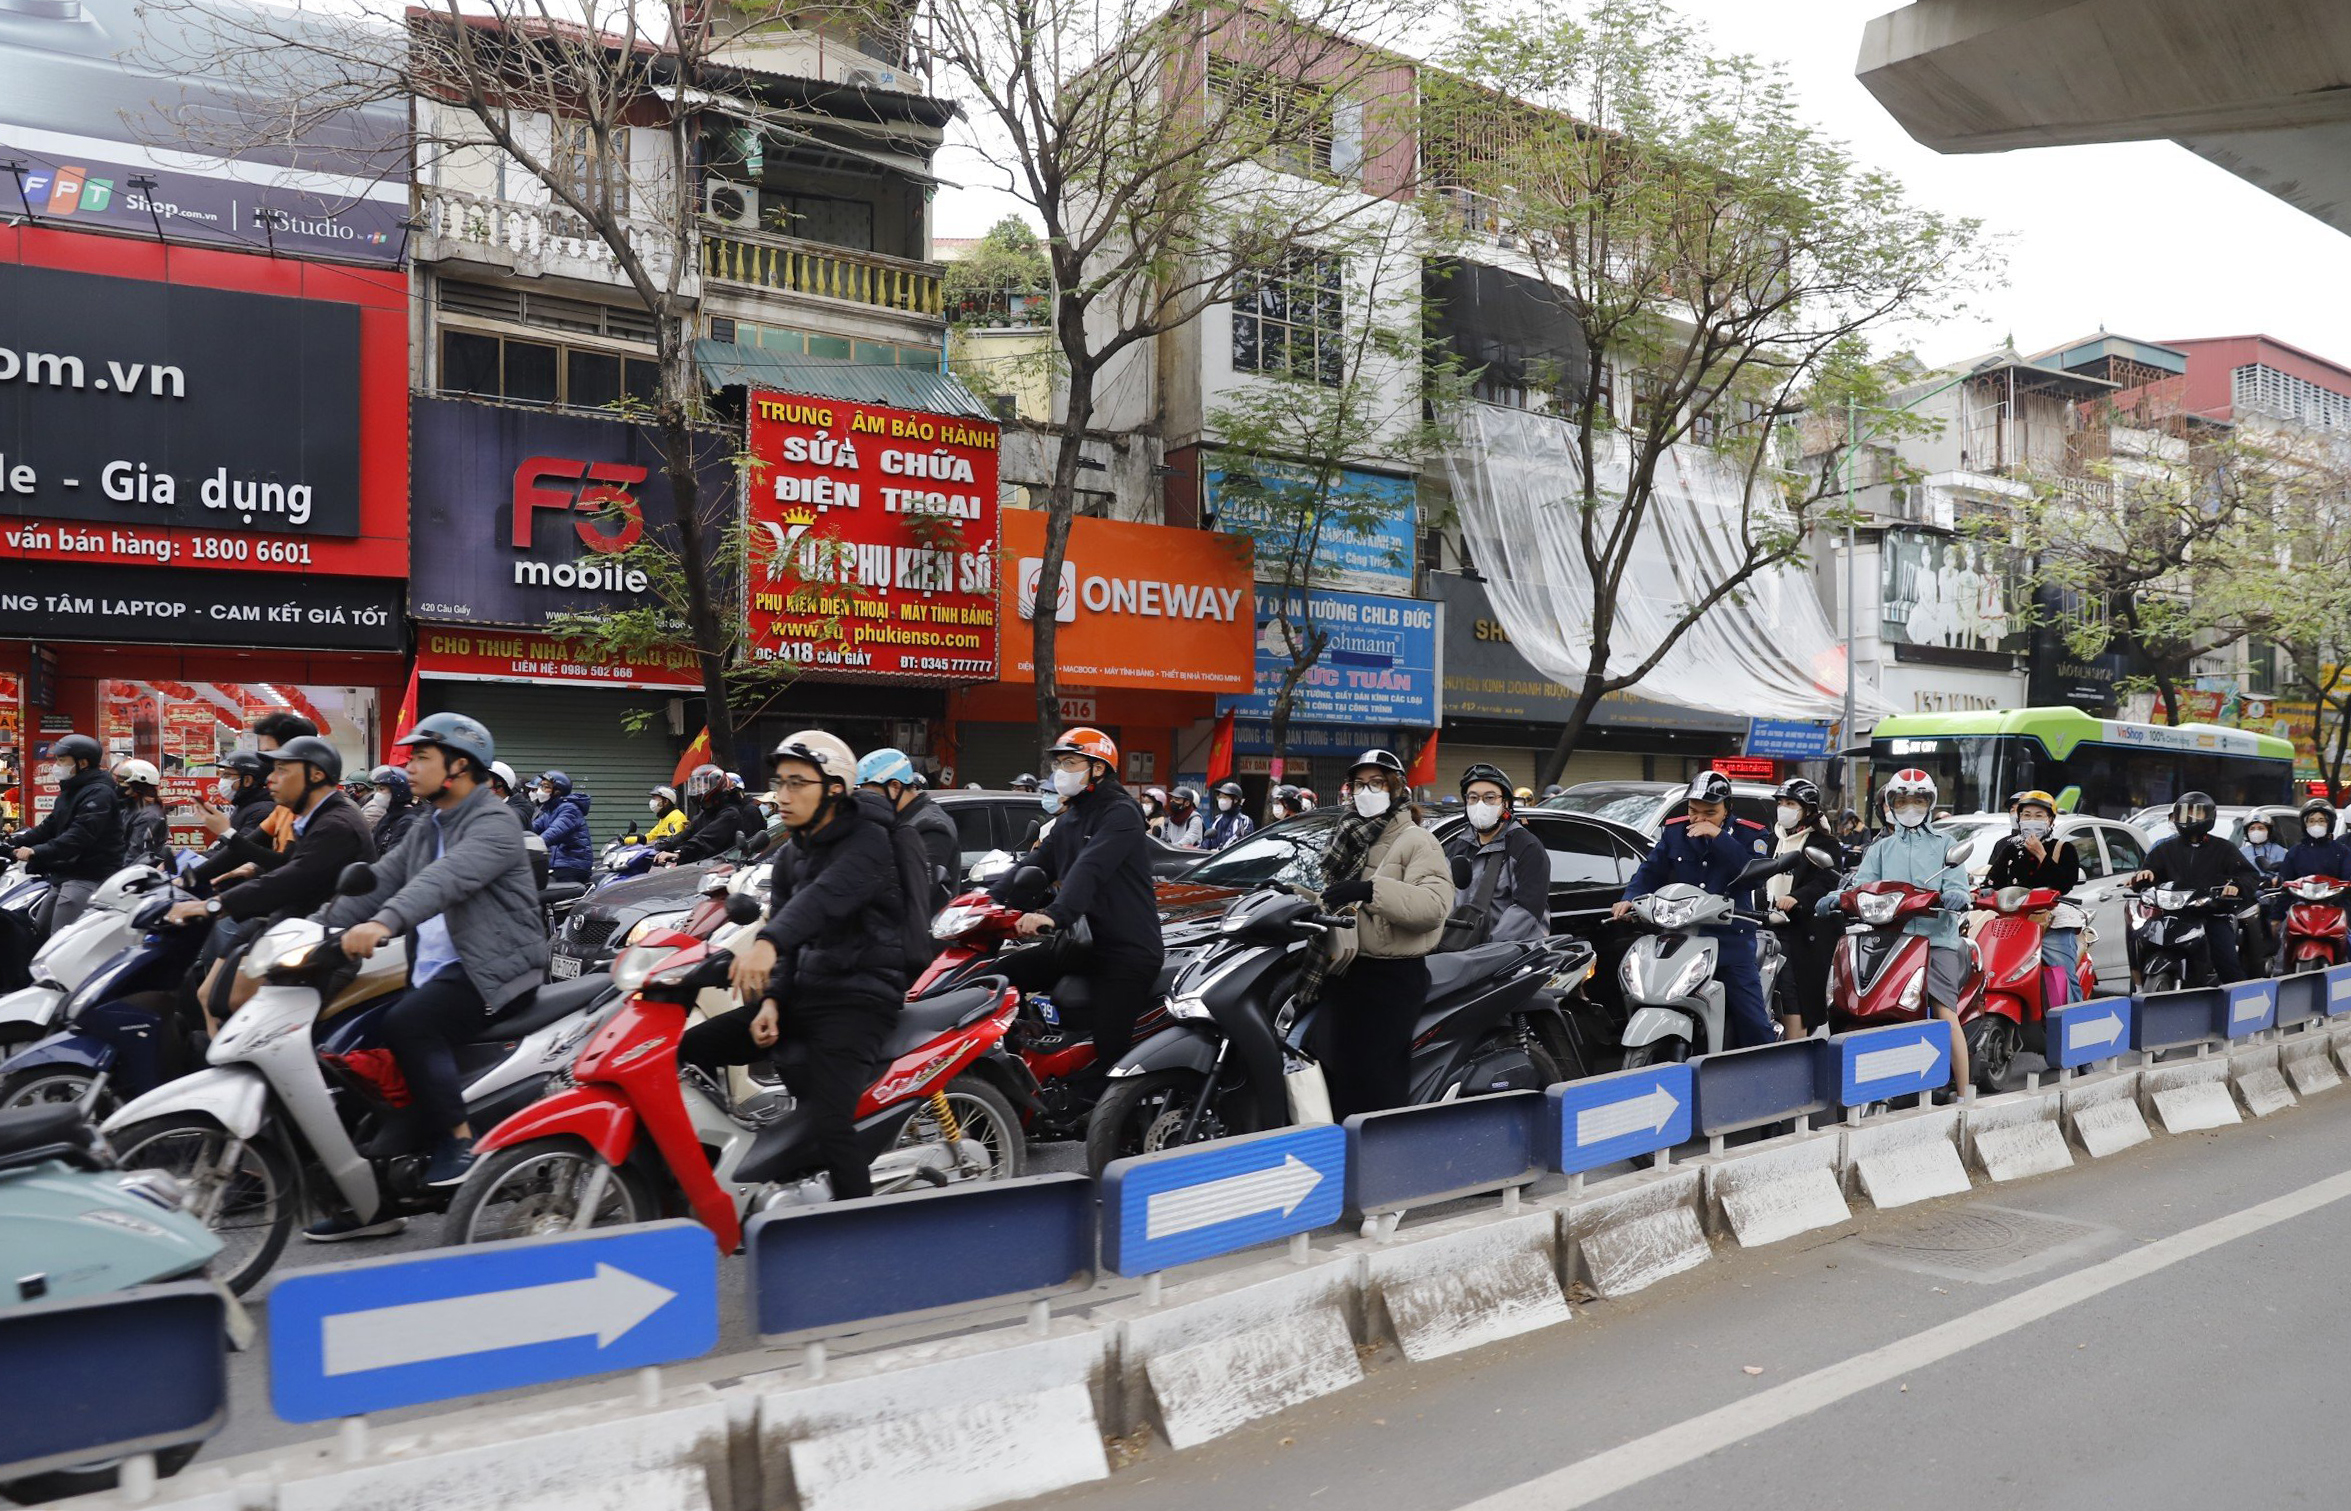 Đường phố Hà Nội thông thoáng bất ngờ sau kỳ nghỉ tết Nguyên đán- Ảnh 4.